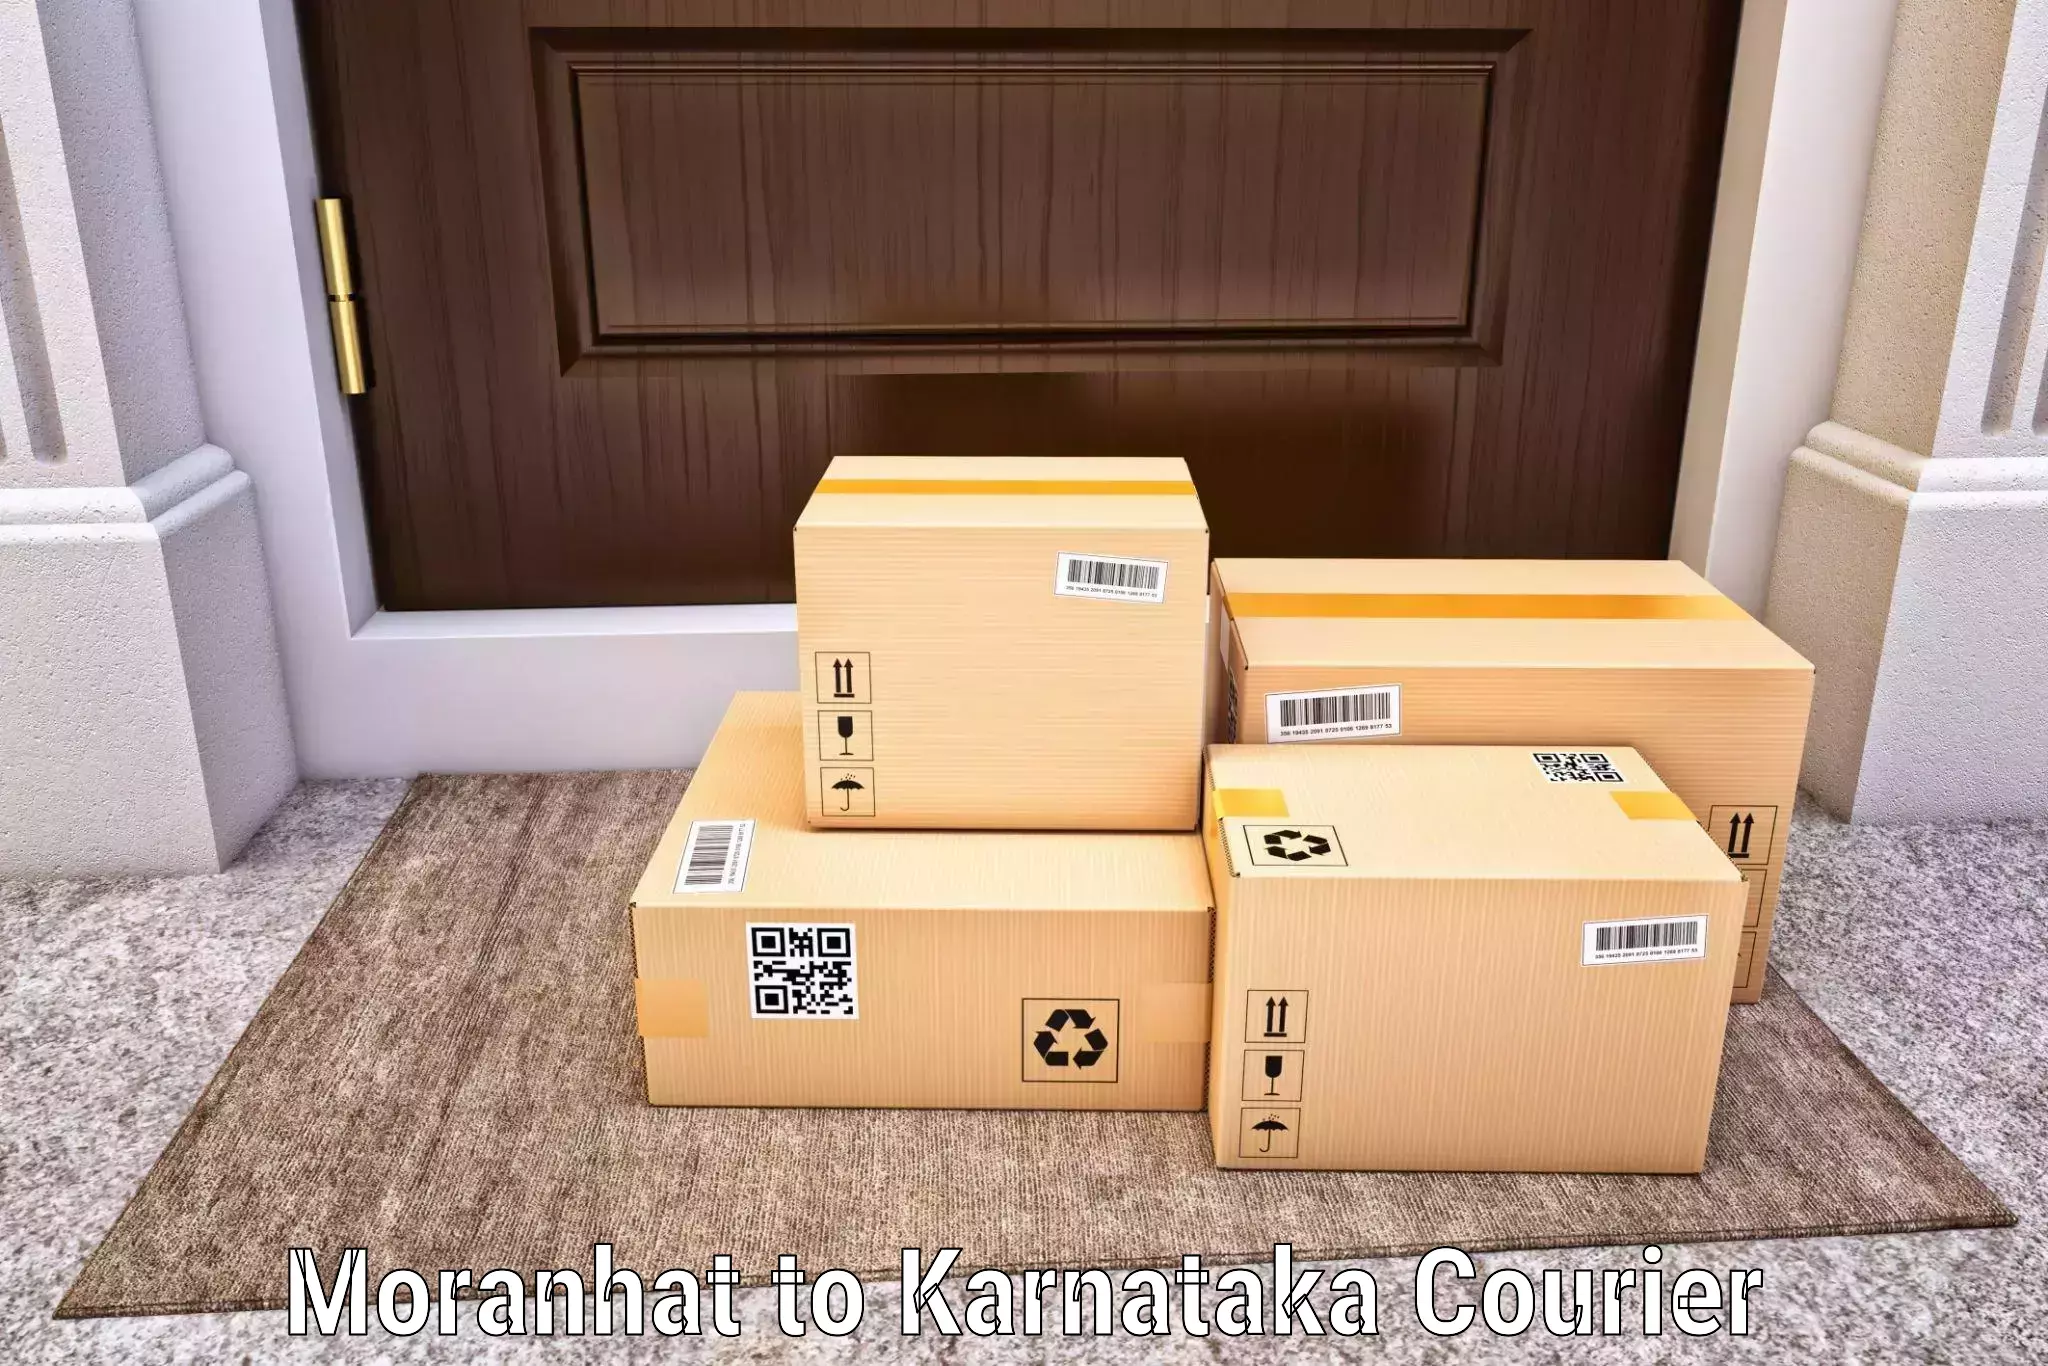 Premium courier solutions Moranhat to Indi